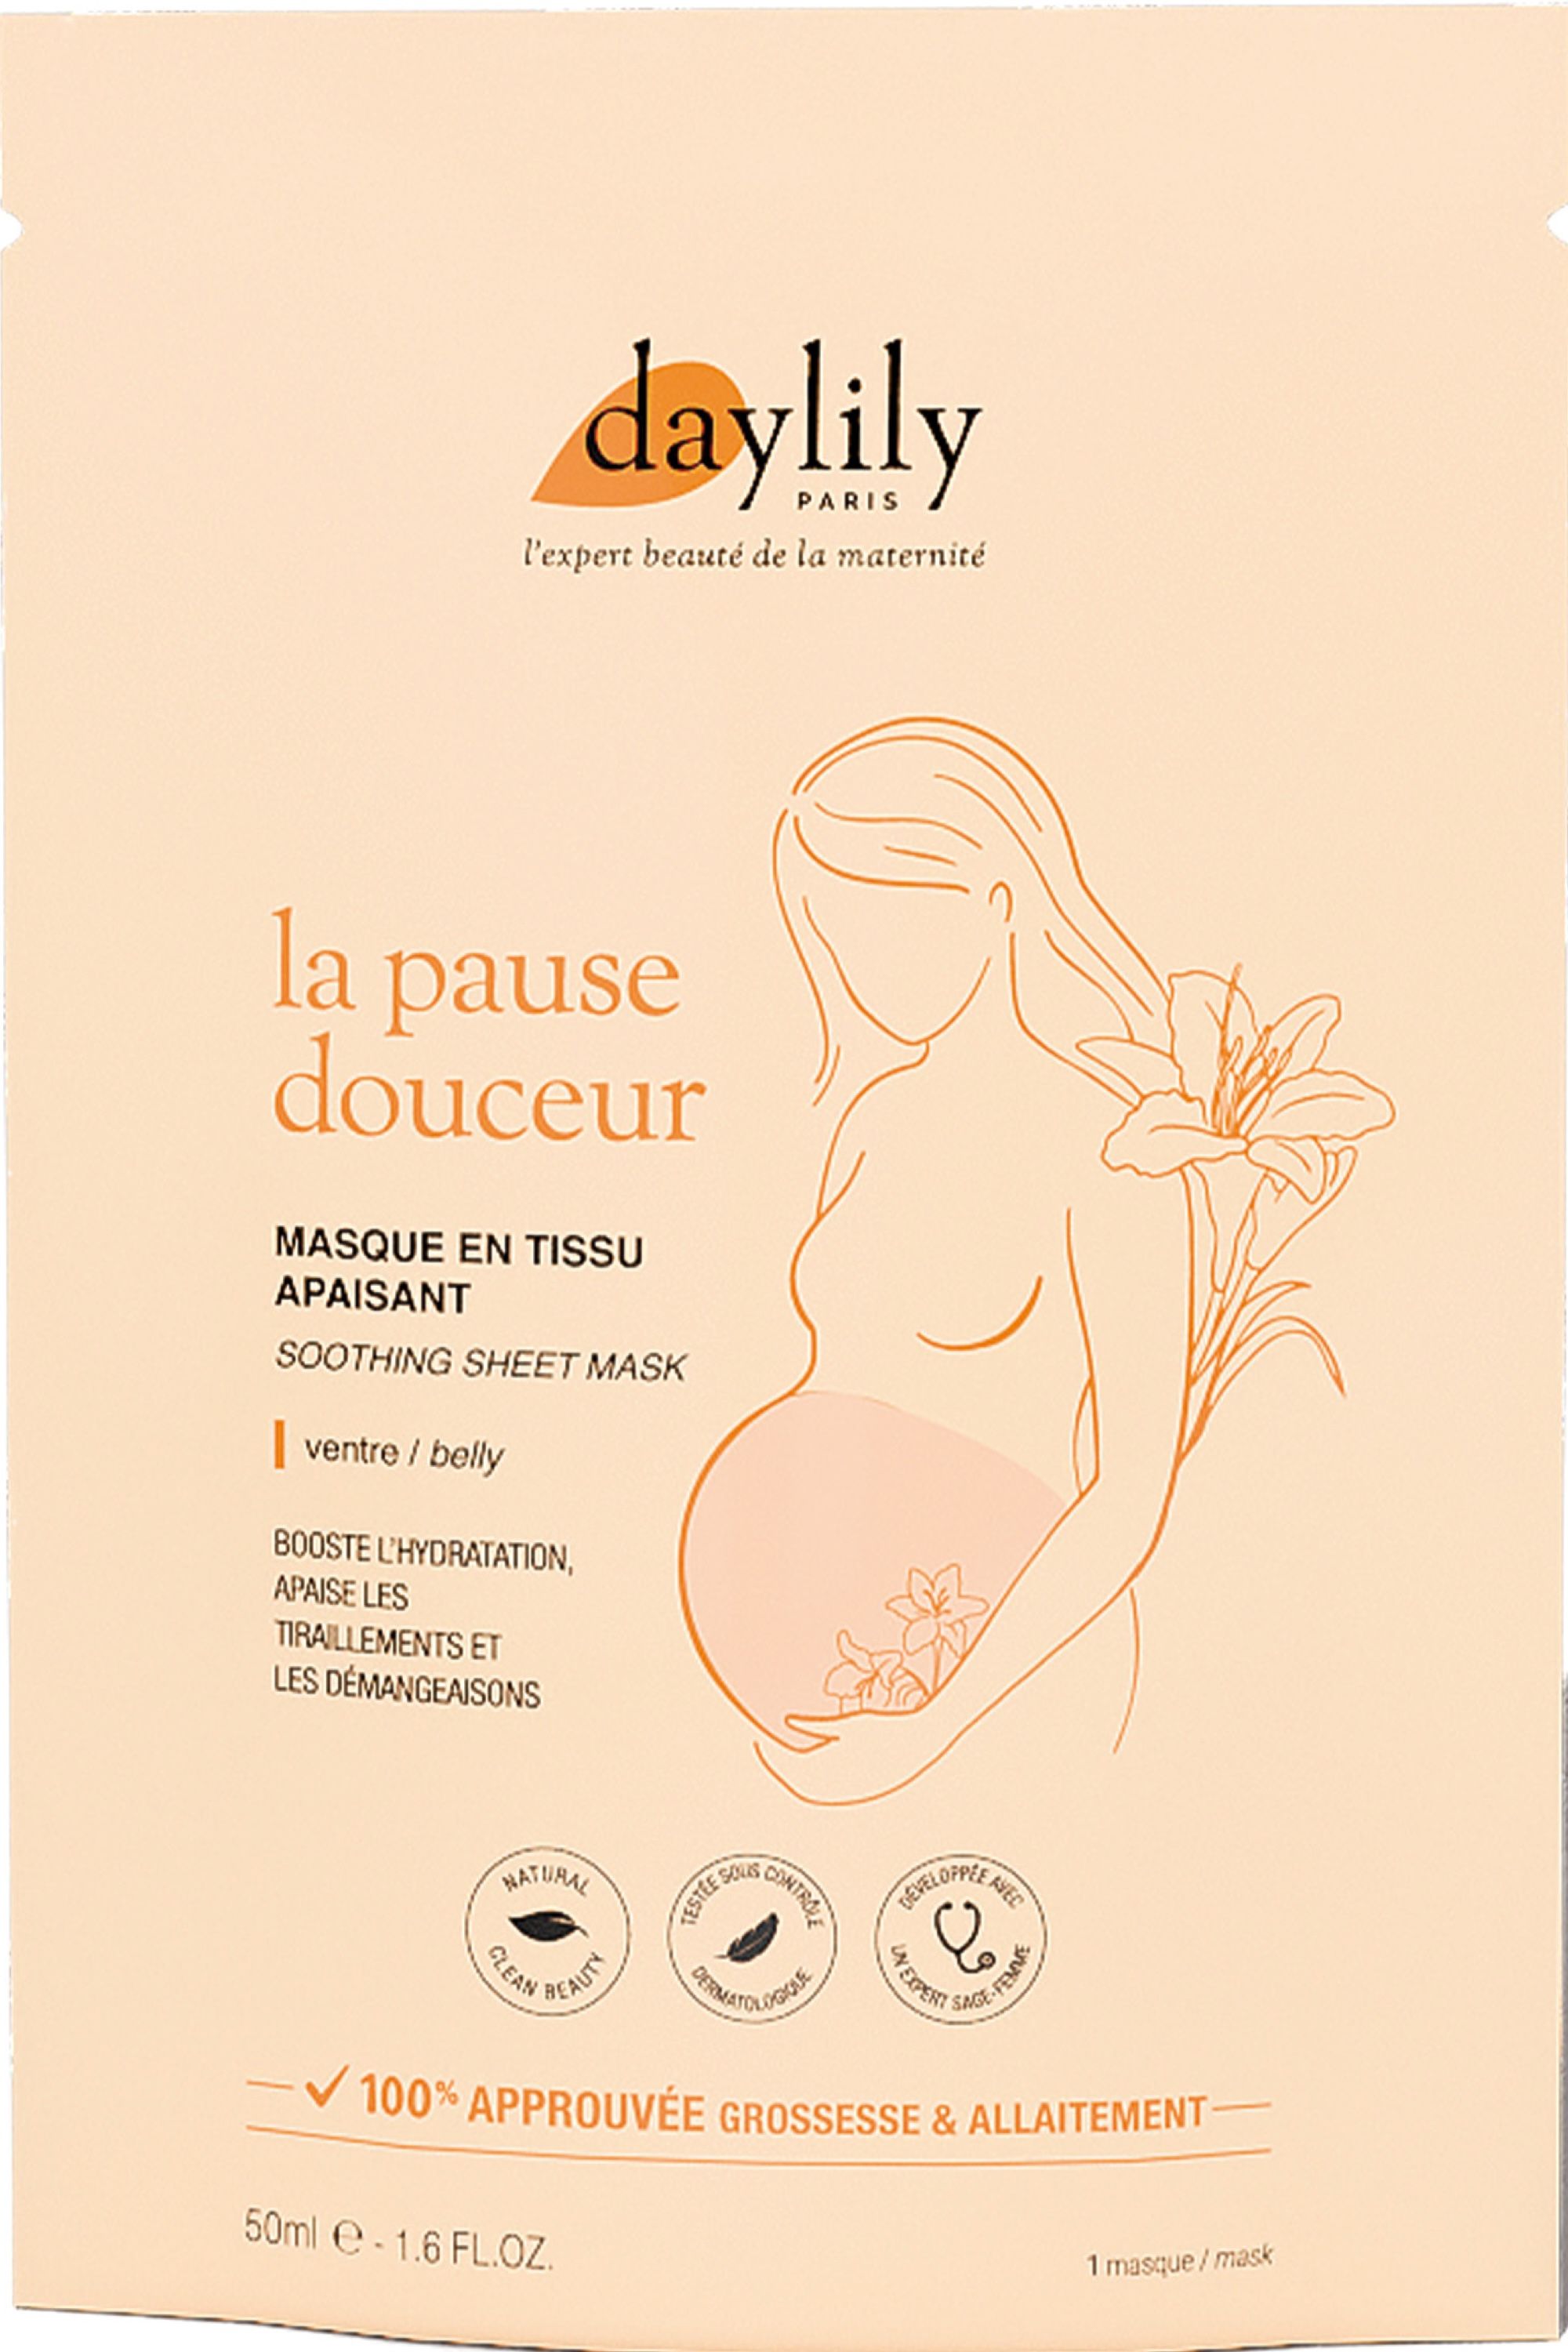 Comment donner le premier bain de bébé ? – Daylily Paris